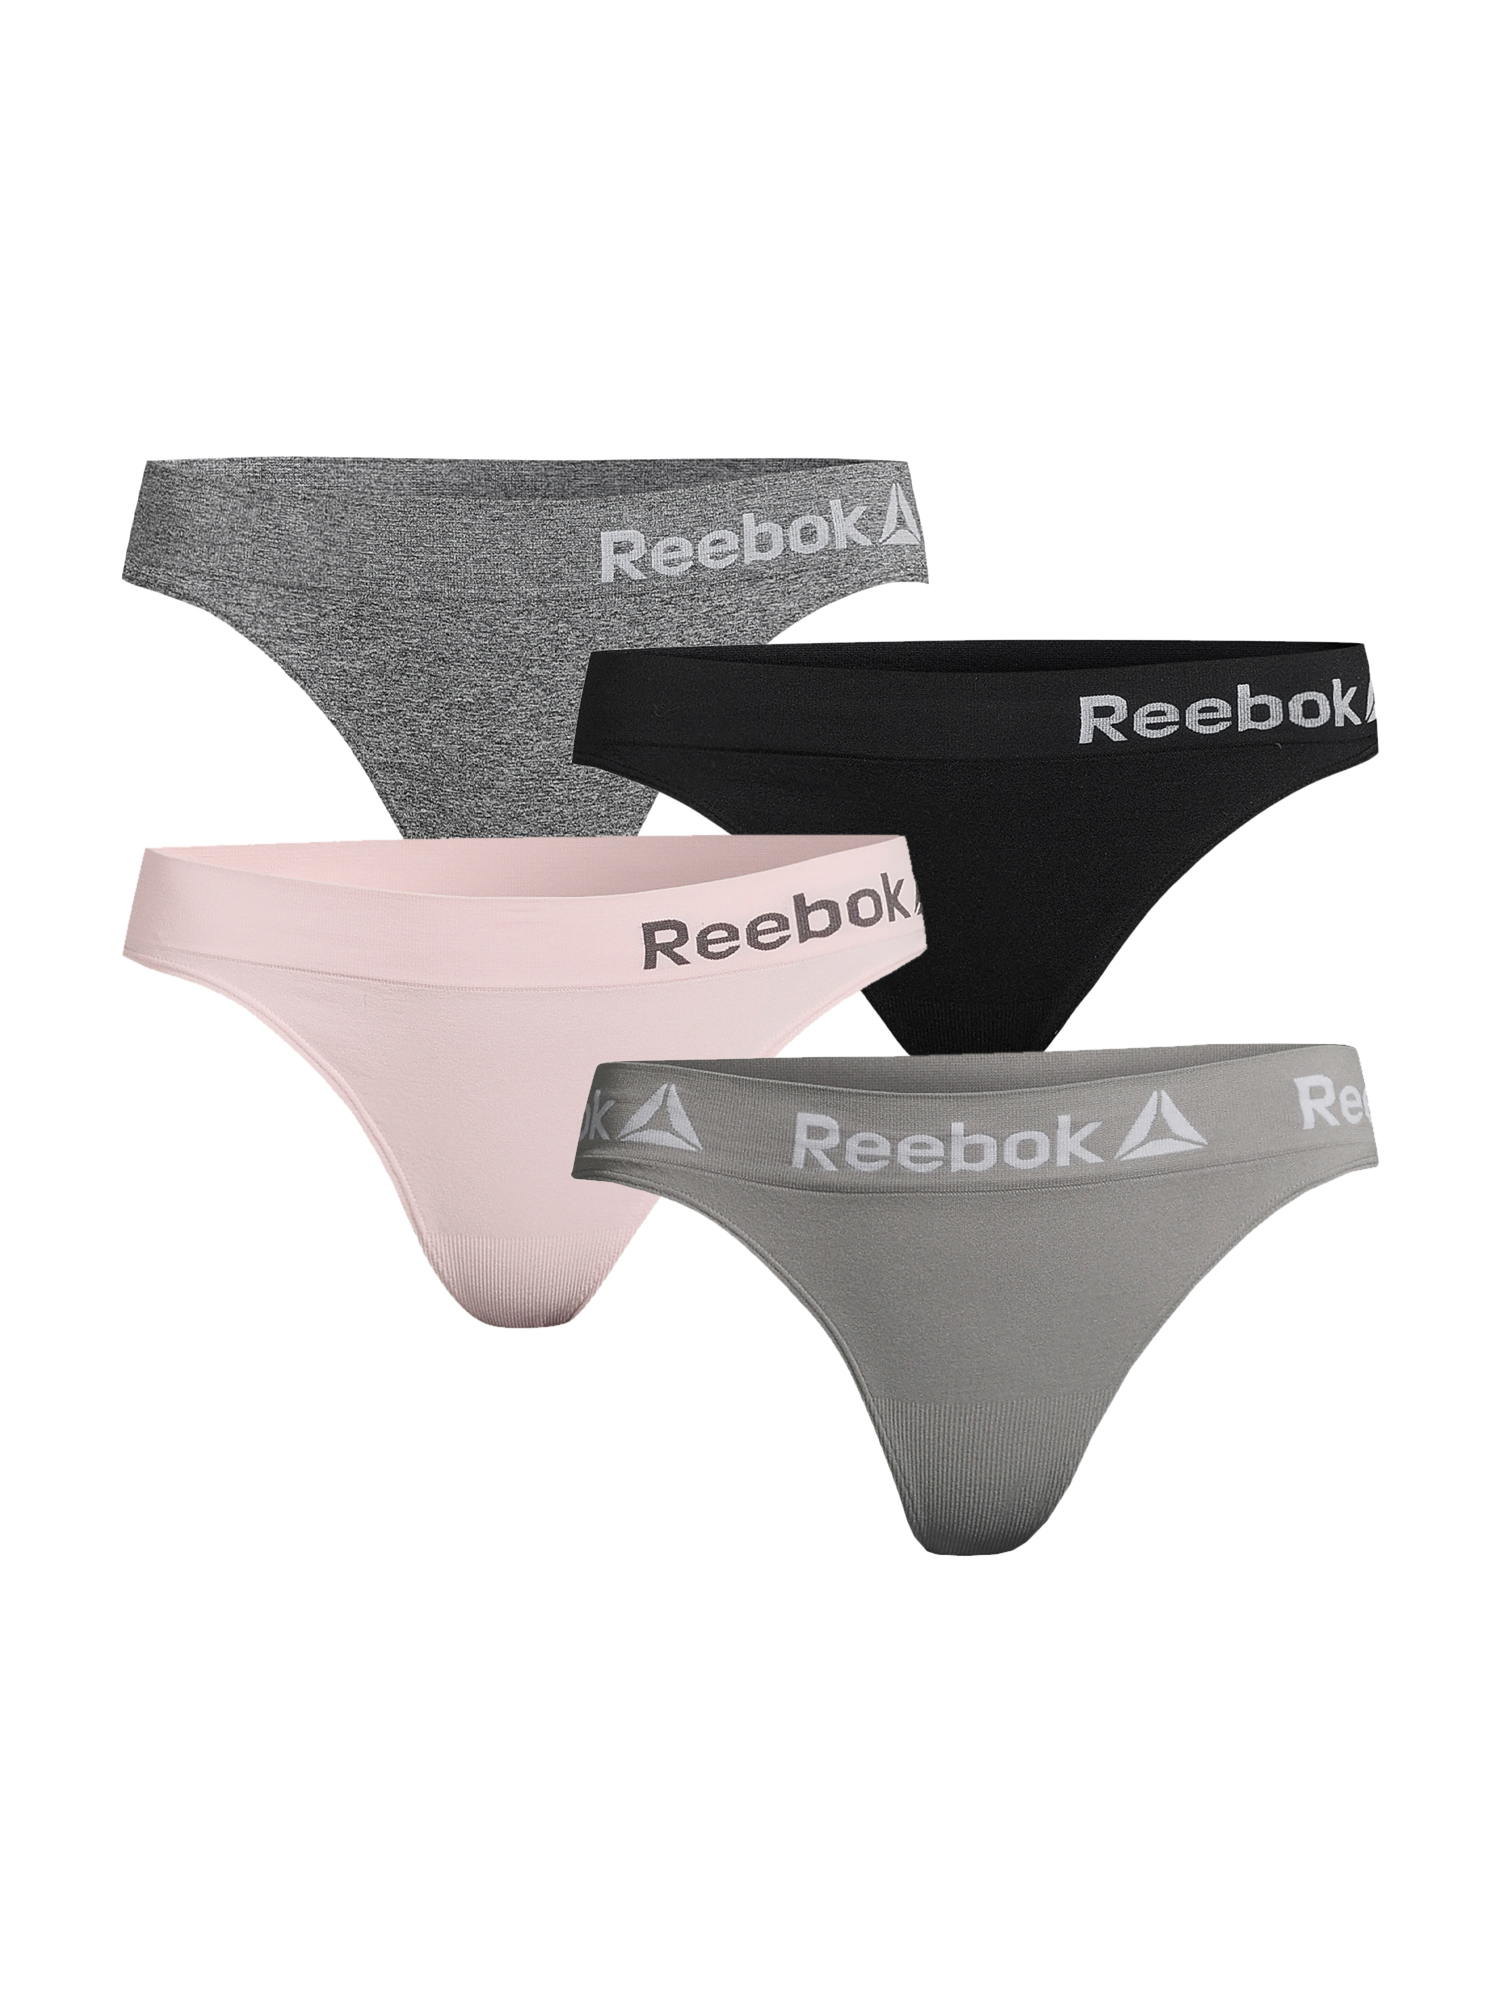 Reebok Women's Seamless Thong Panties, 4-Pack - image 1 of 5